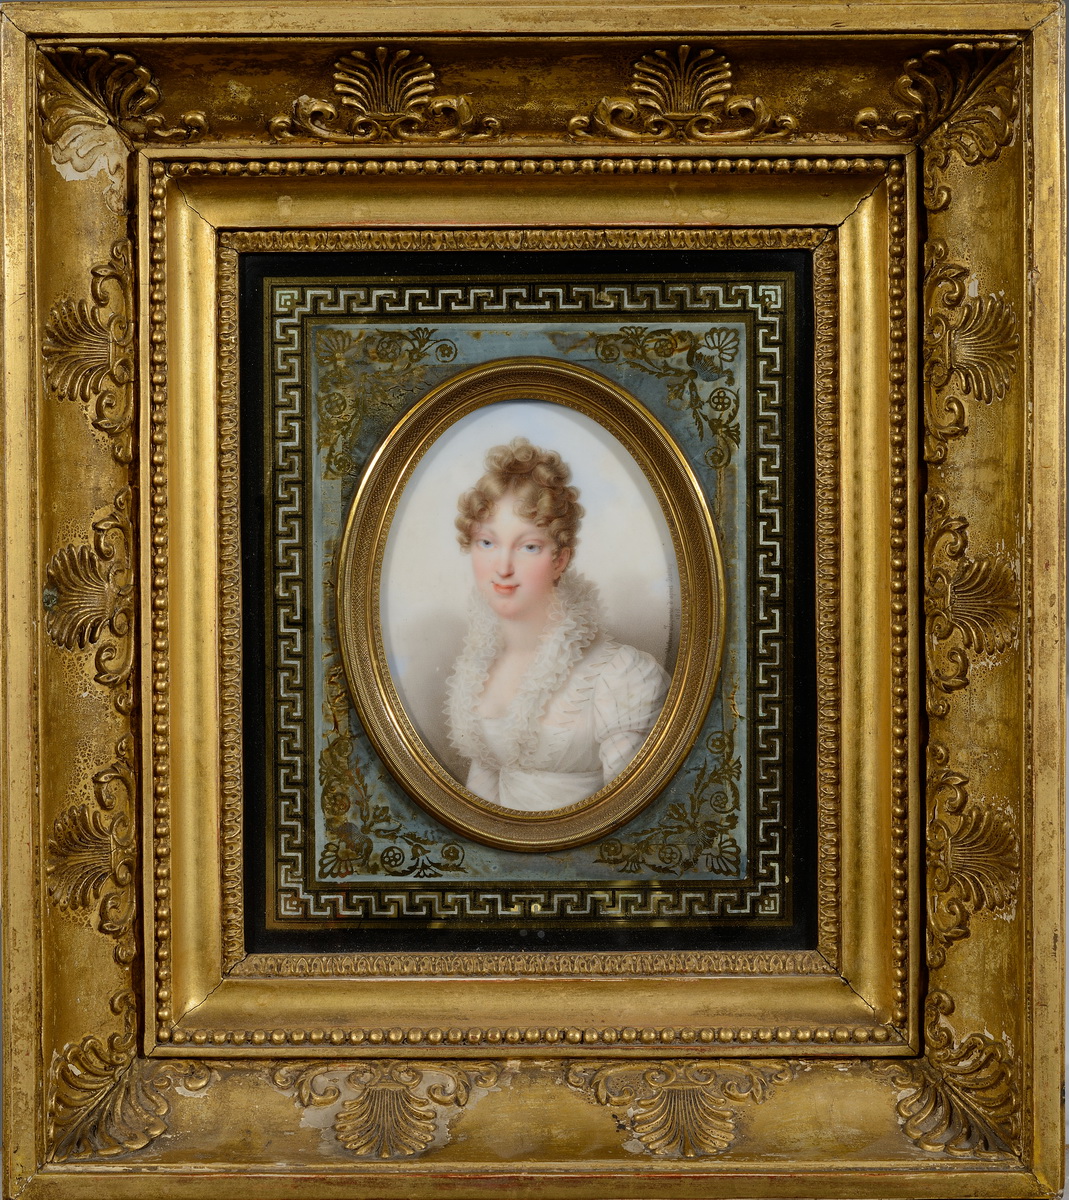 Portrait de limpératrice Marie-Louise - Patrimoine Charles-André COLONNA WALEWSKI, en ligne directe de Napoléon